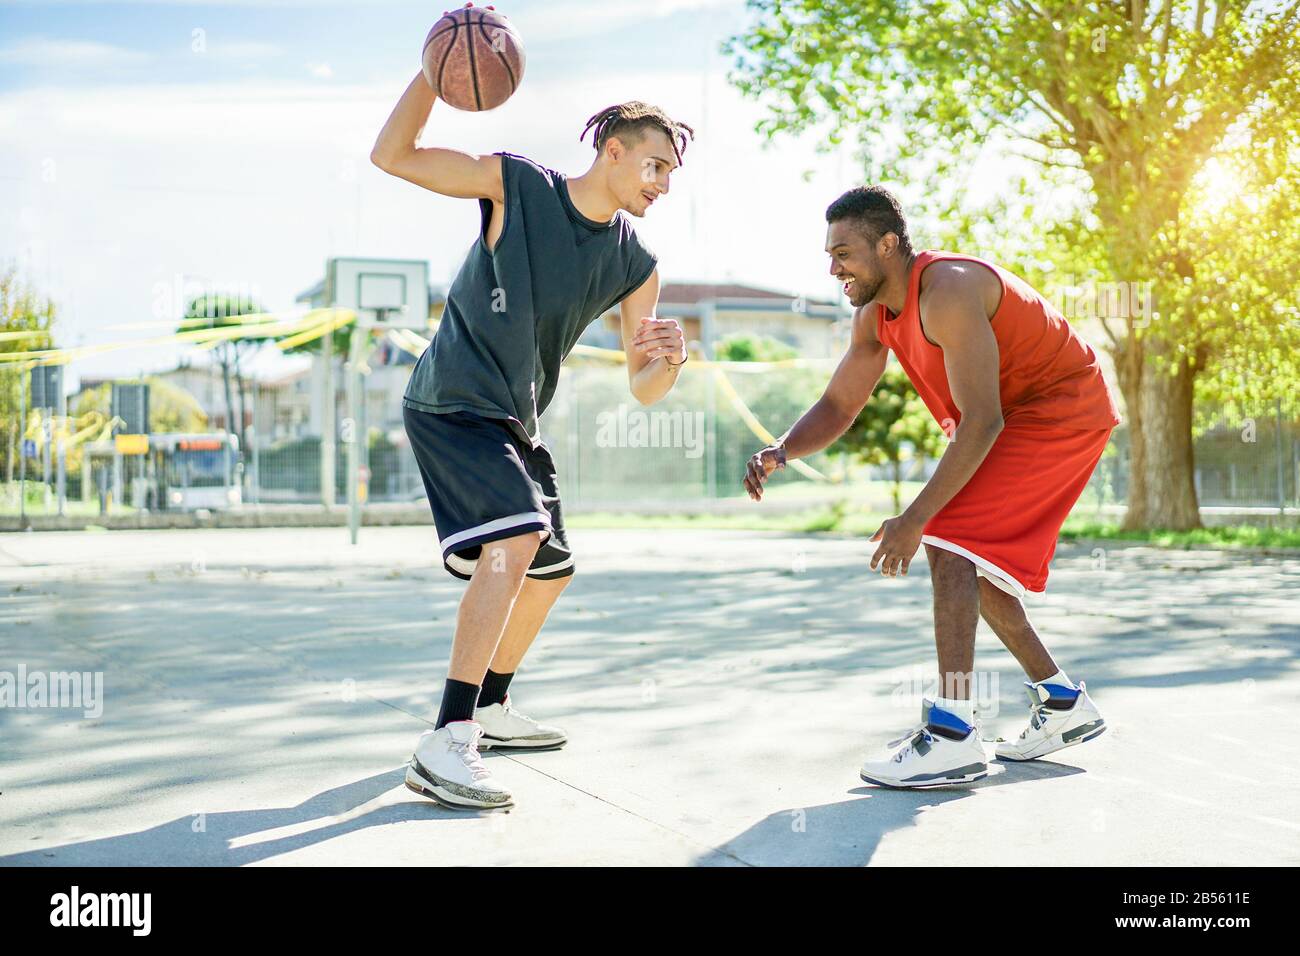 Deux amis joyeux et multiraciaux qui jouent au basket-ball en plein air dans le cadre d'un concours urbain avec contre-jour : les jeunes qui s'amusent à faire du sport pour une bonne santé Banque D'Images